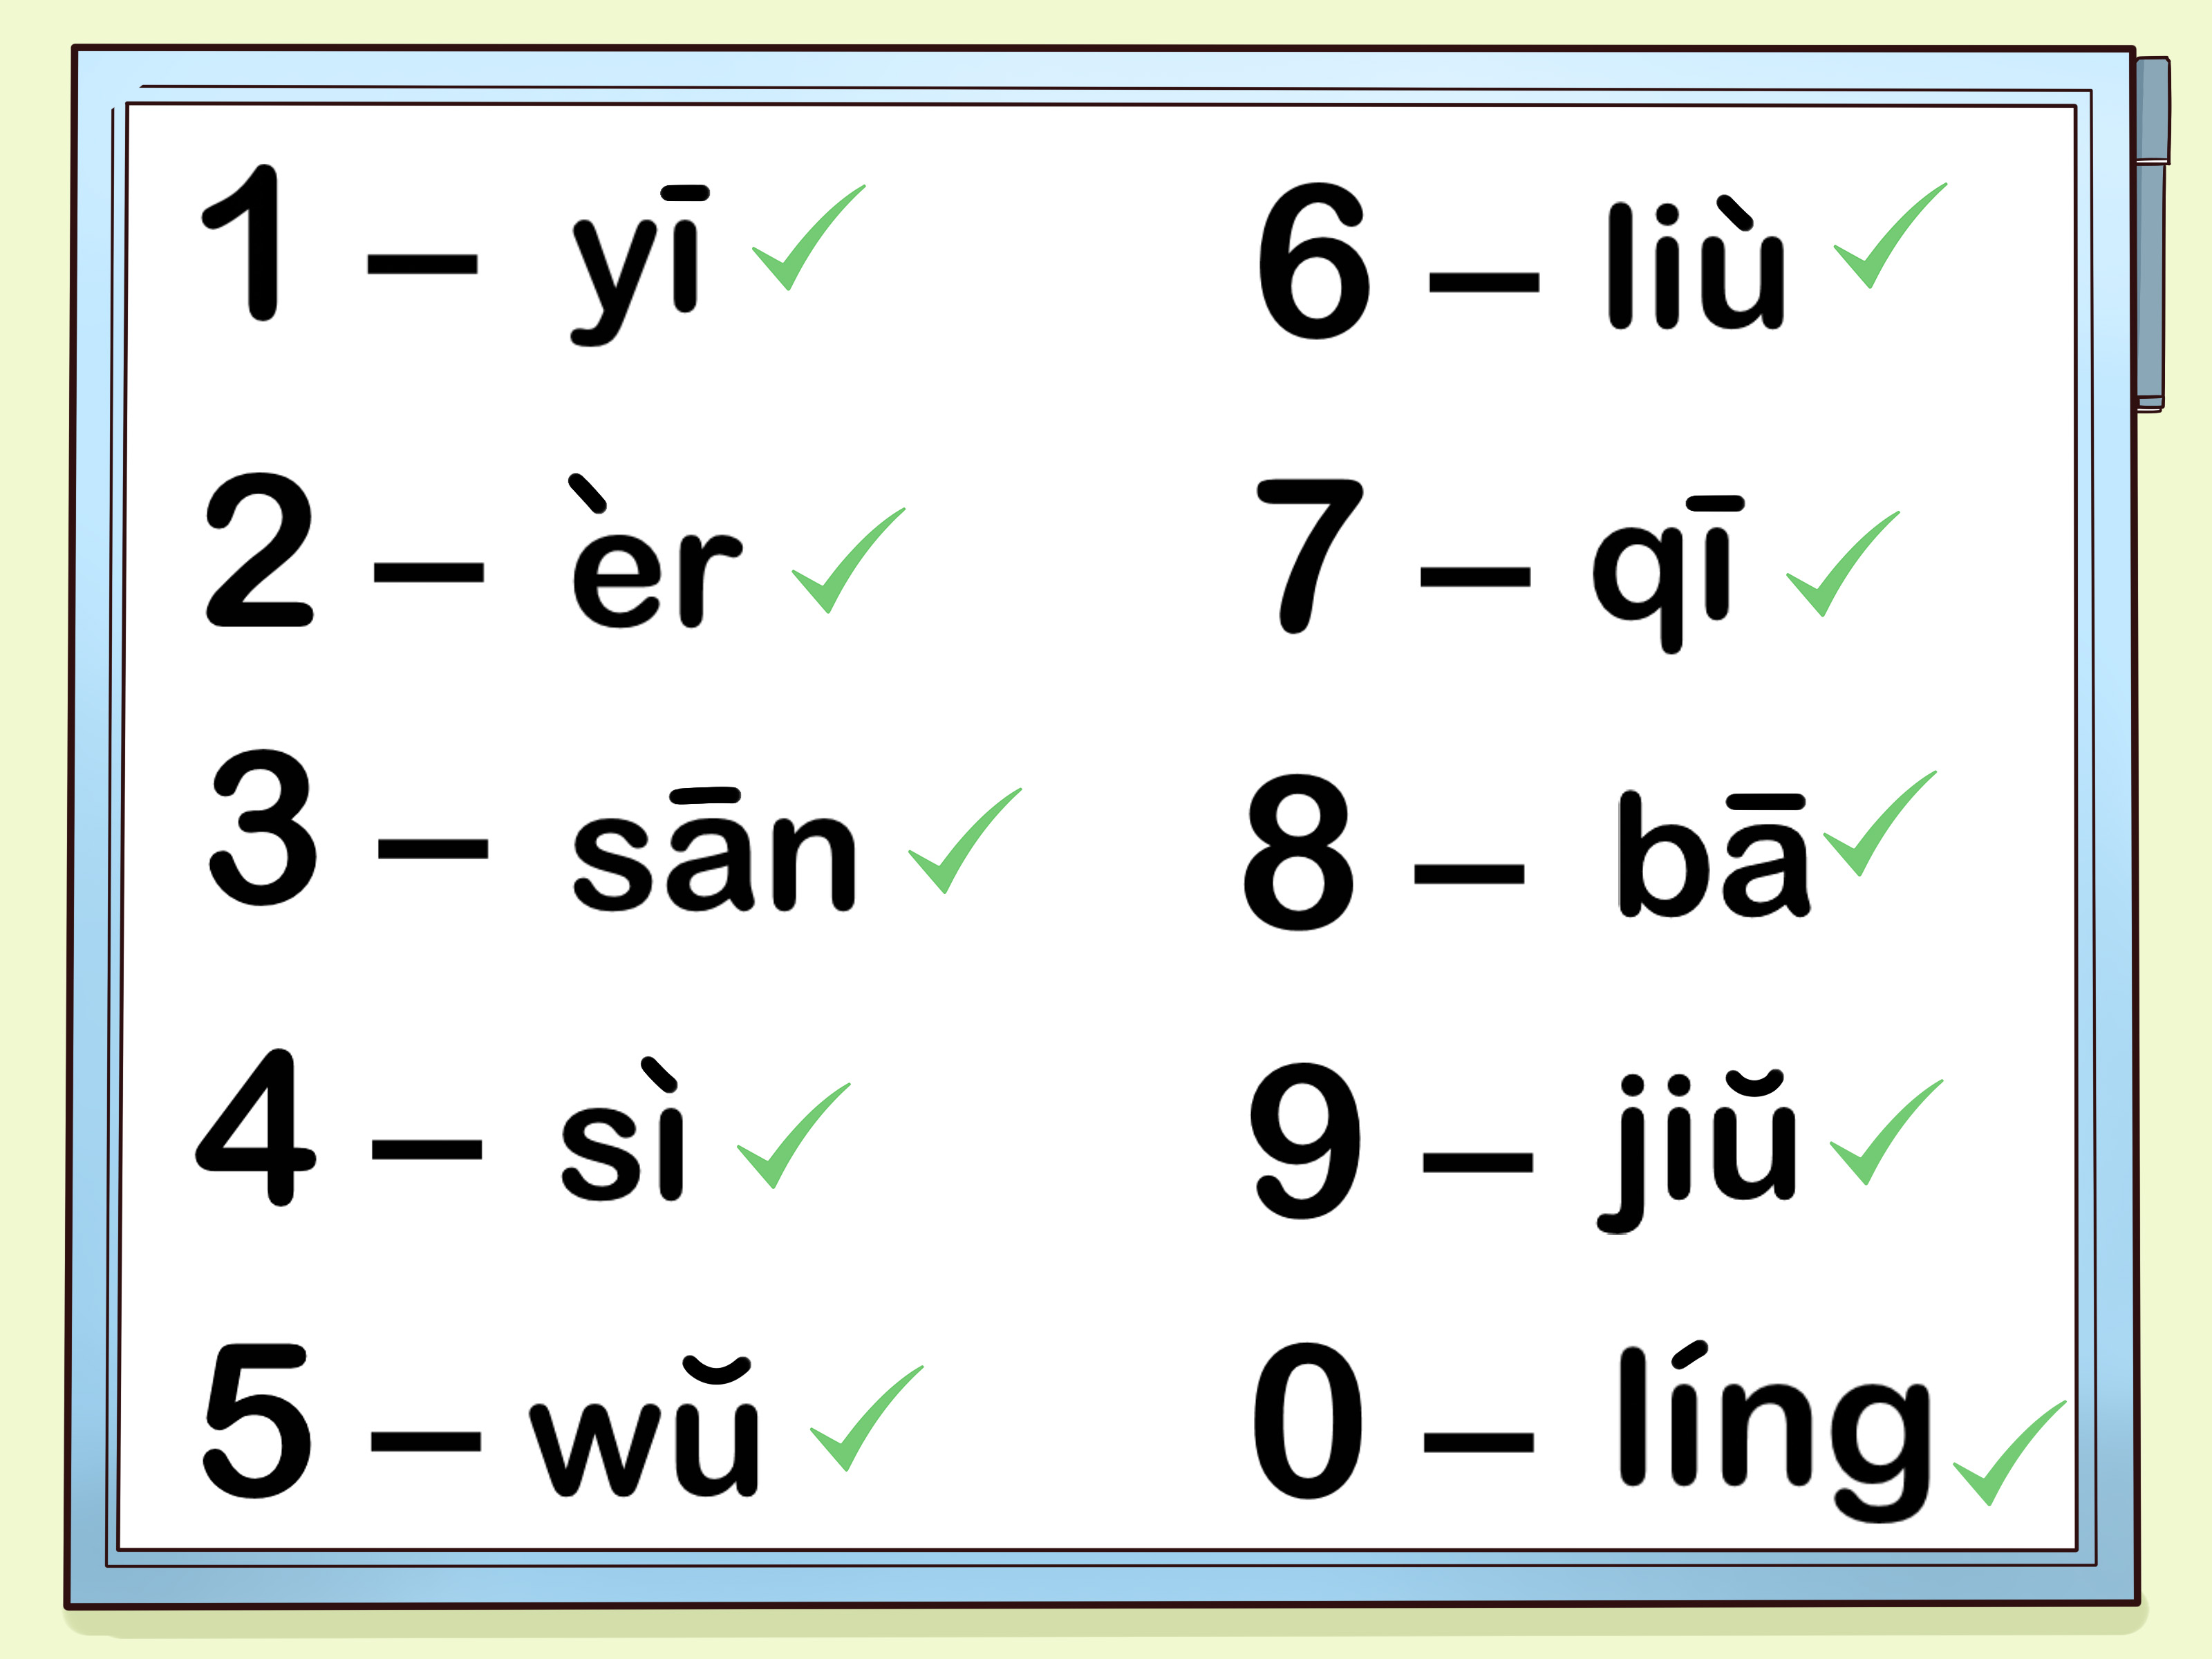 یادگیری اعداد زبان چینی از 1 تا 100